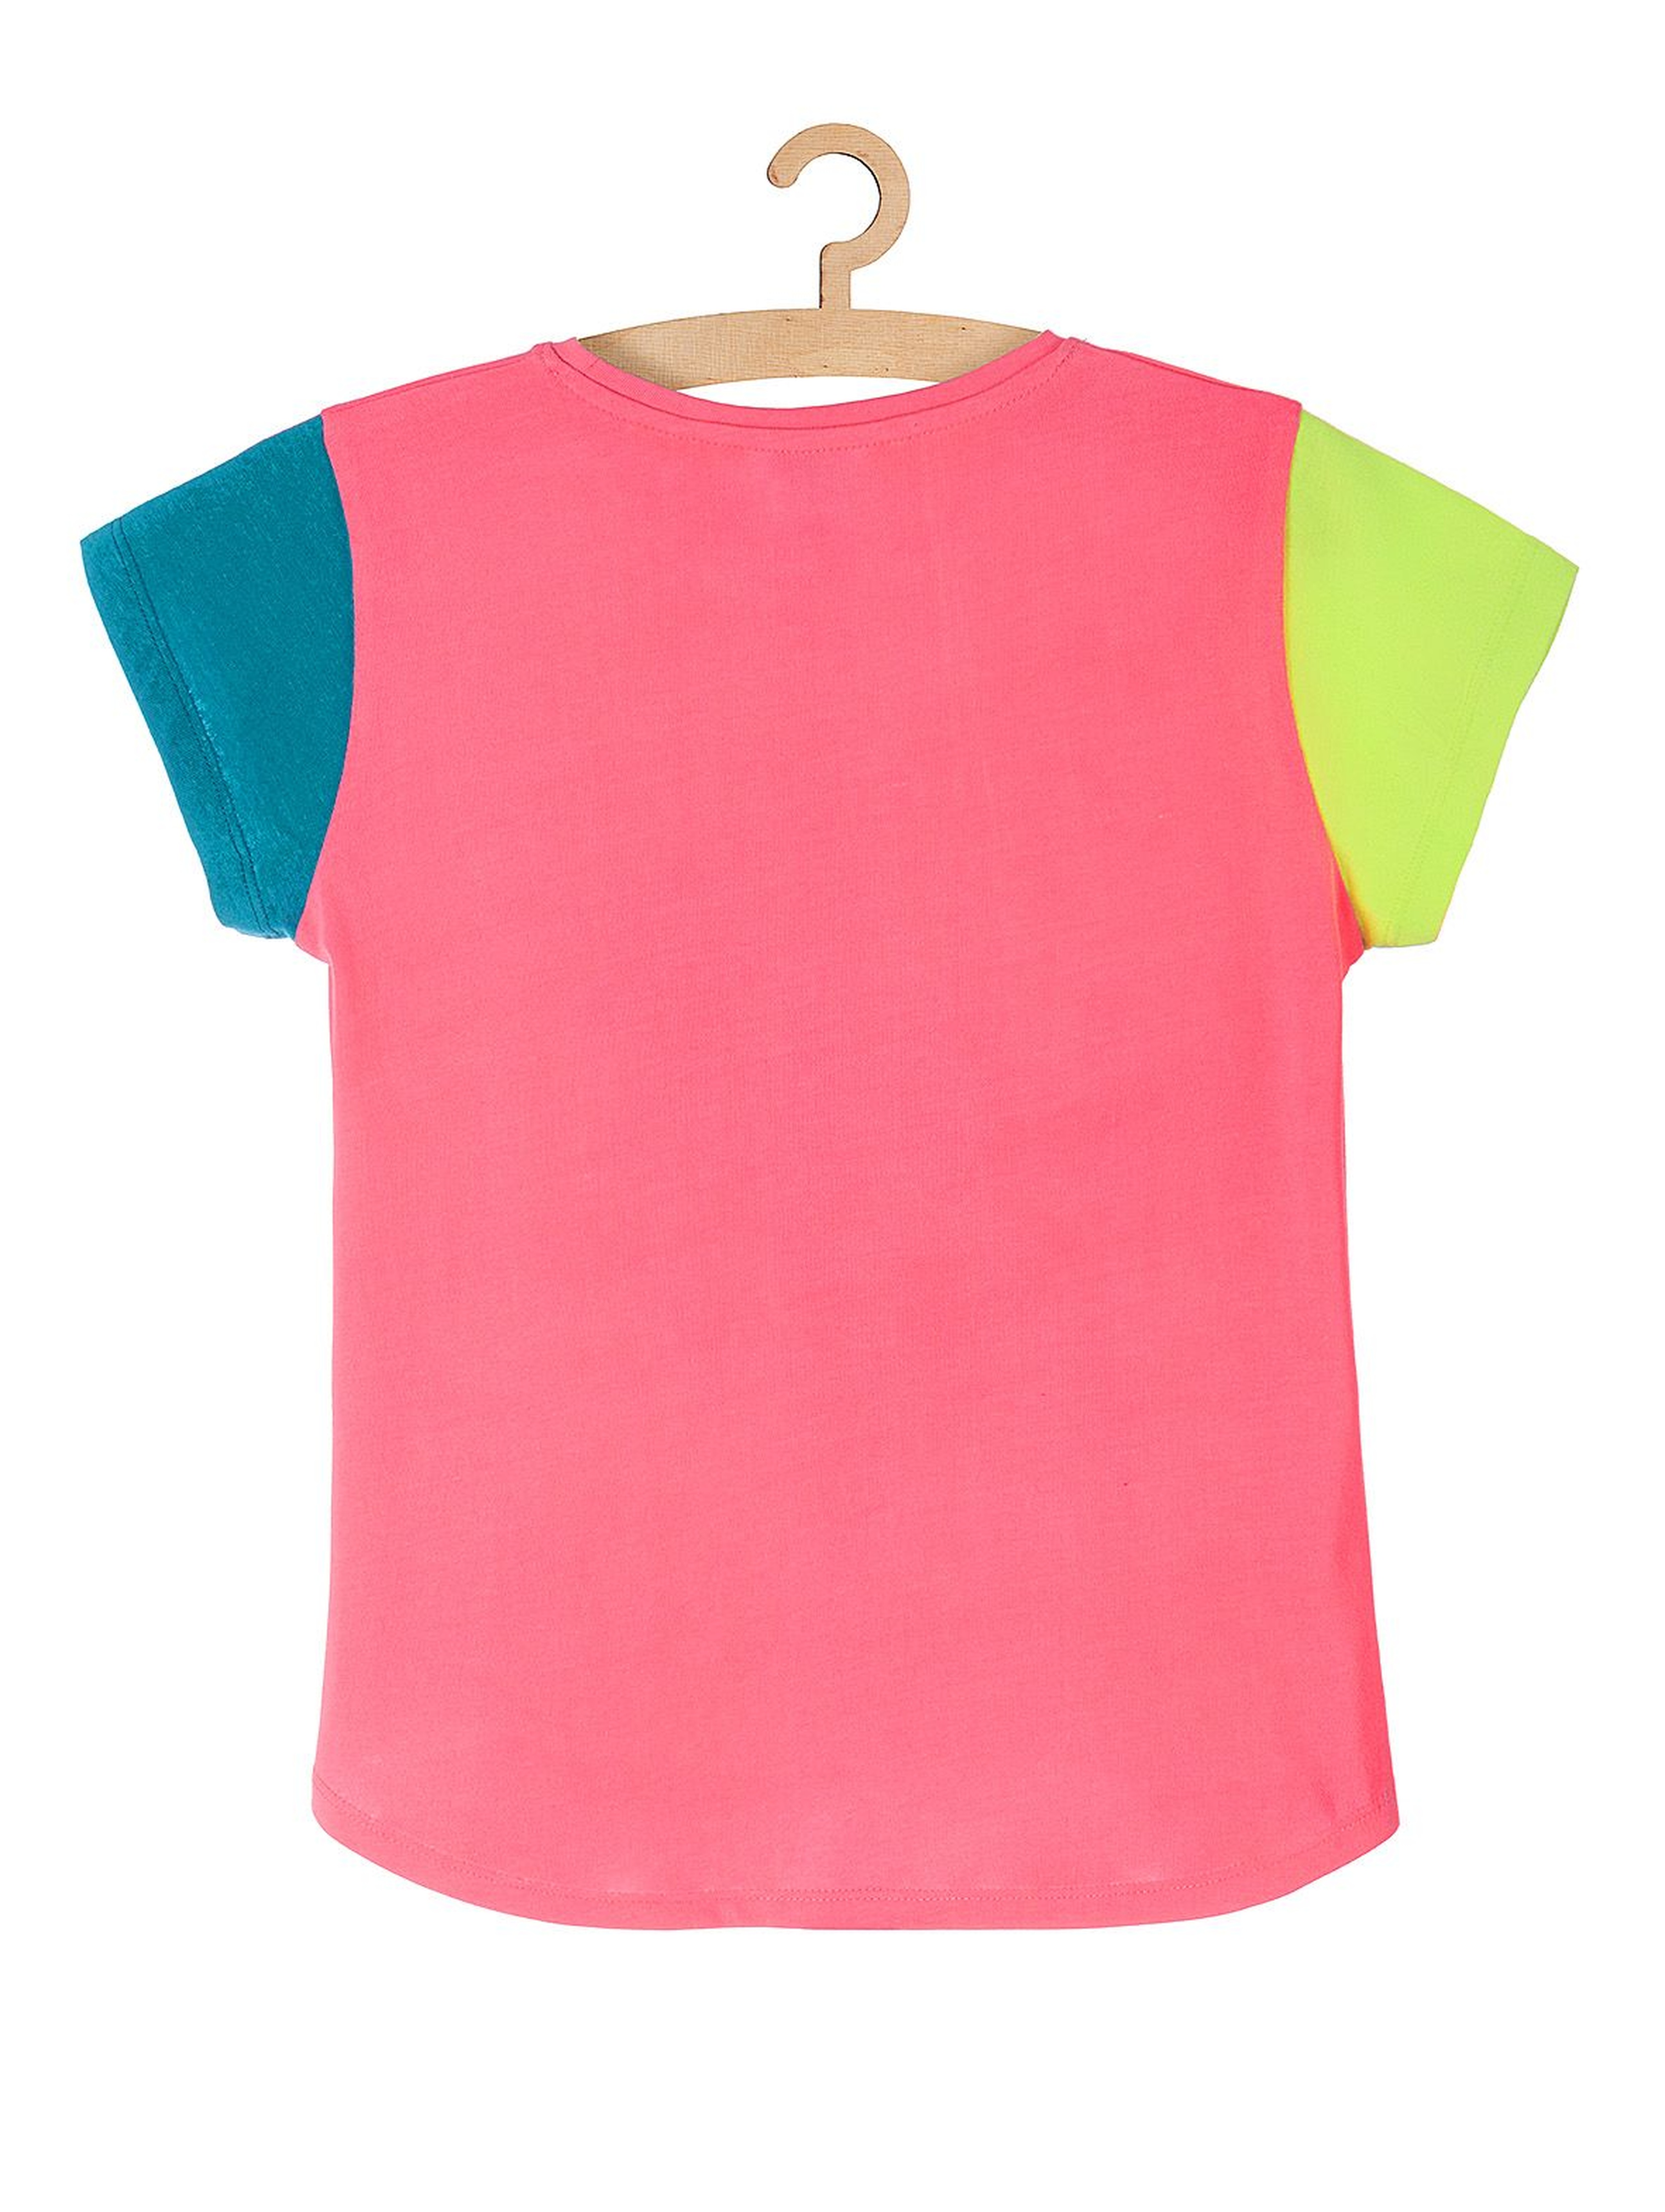 Koszulka dziewczęca dzianinowa w neonowych kolorach